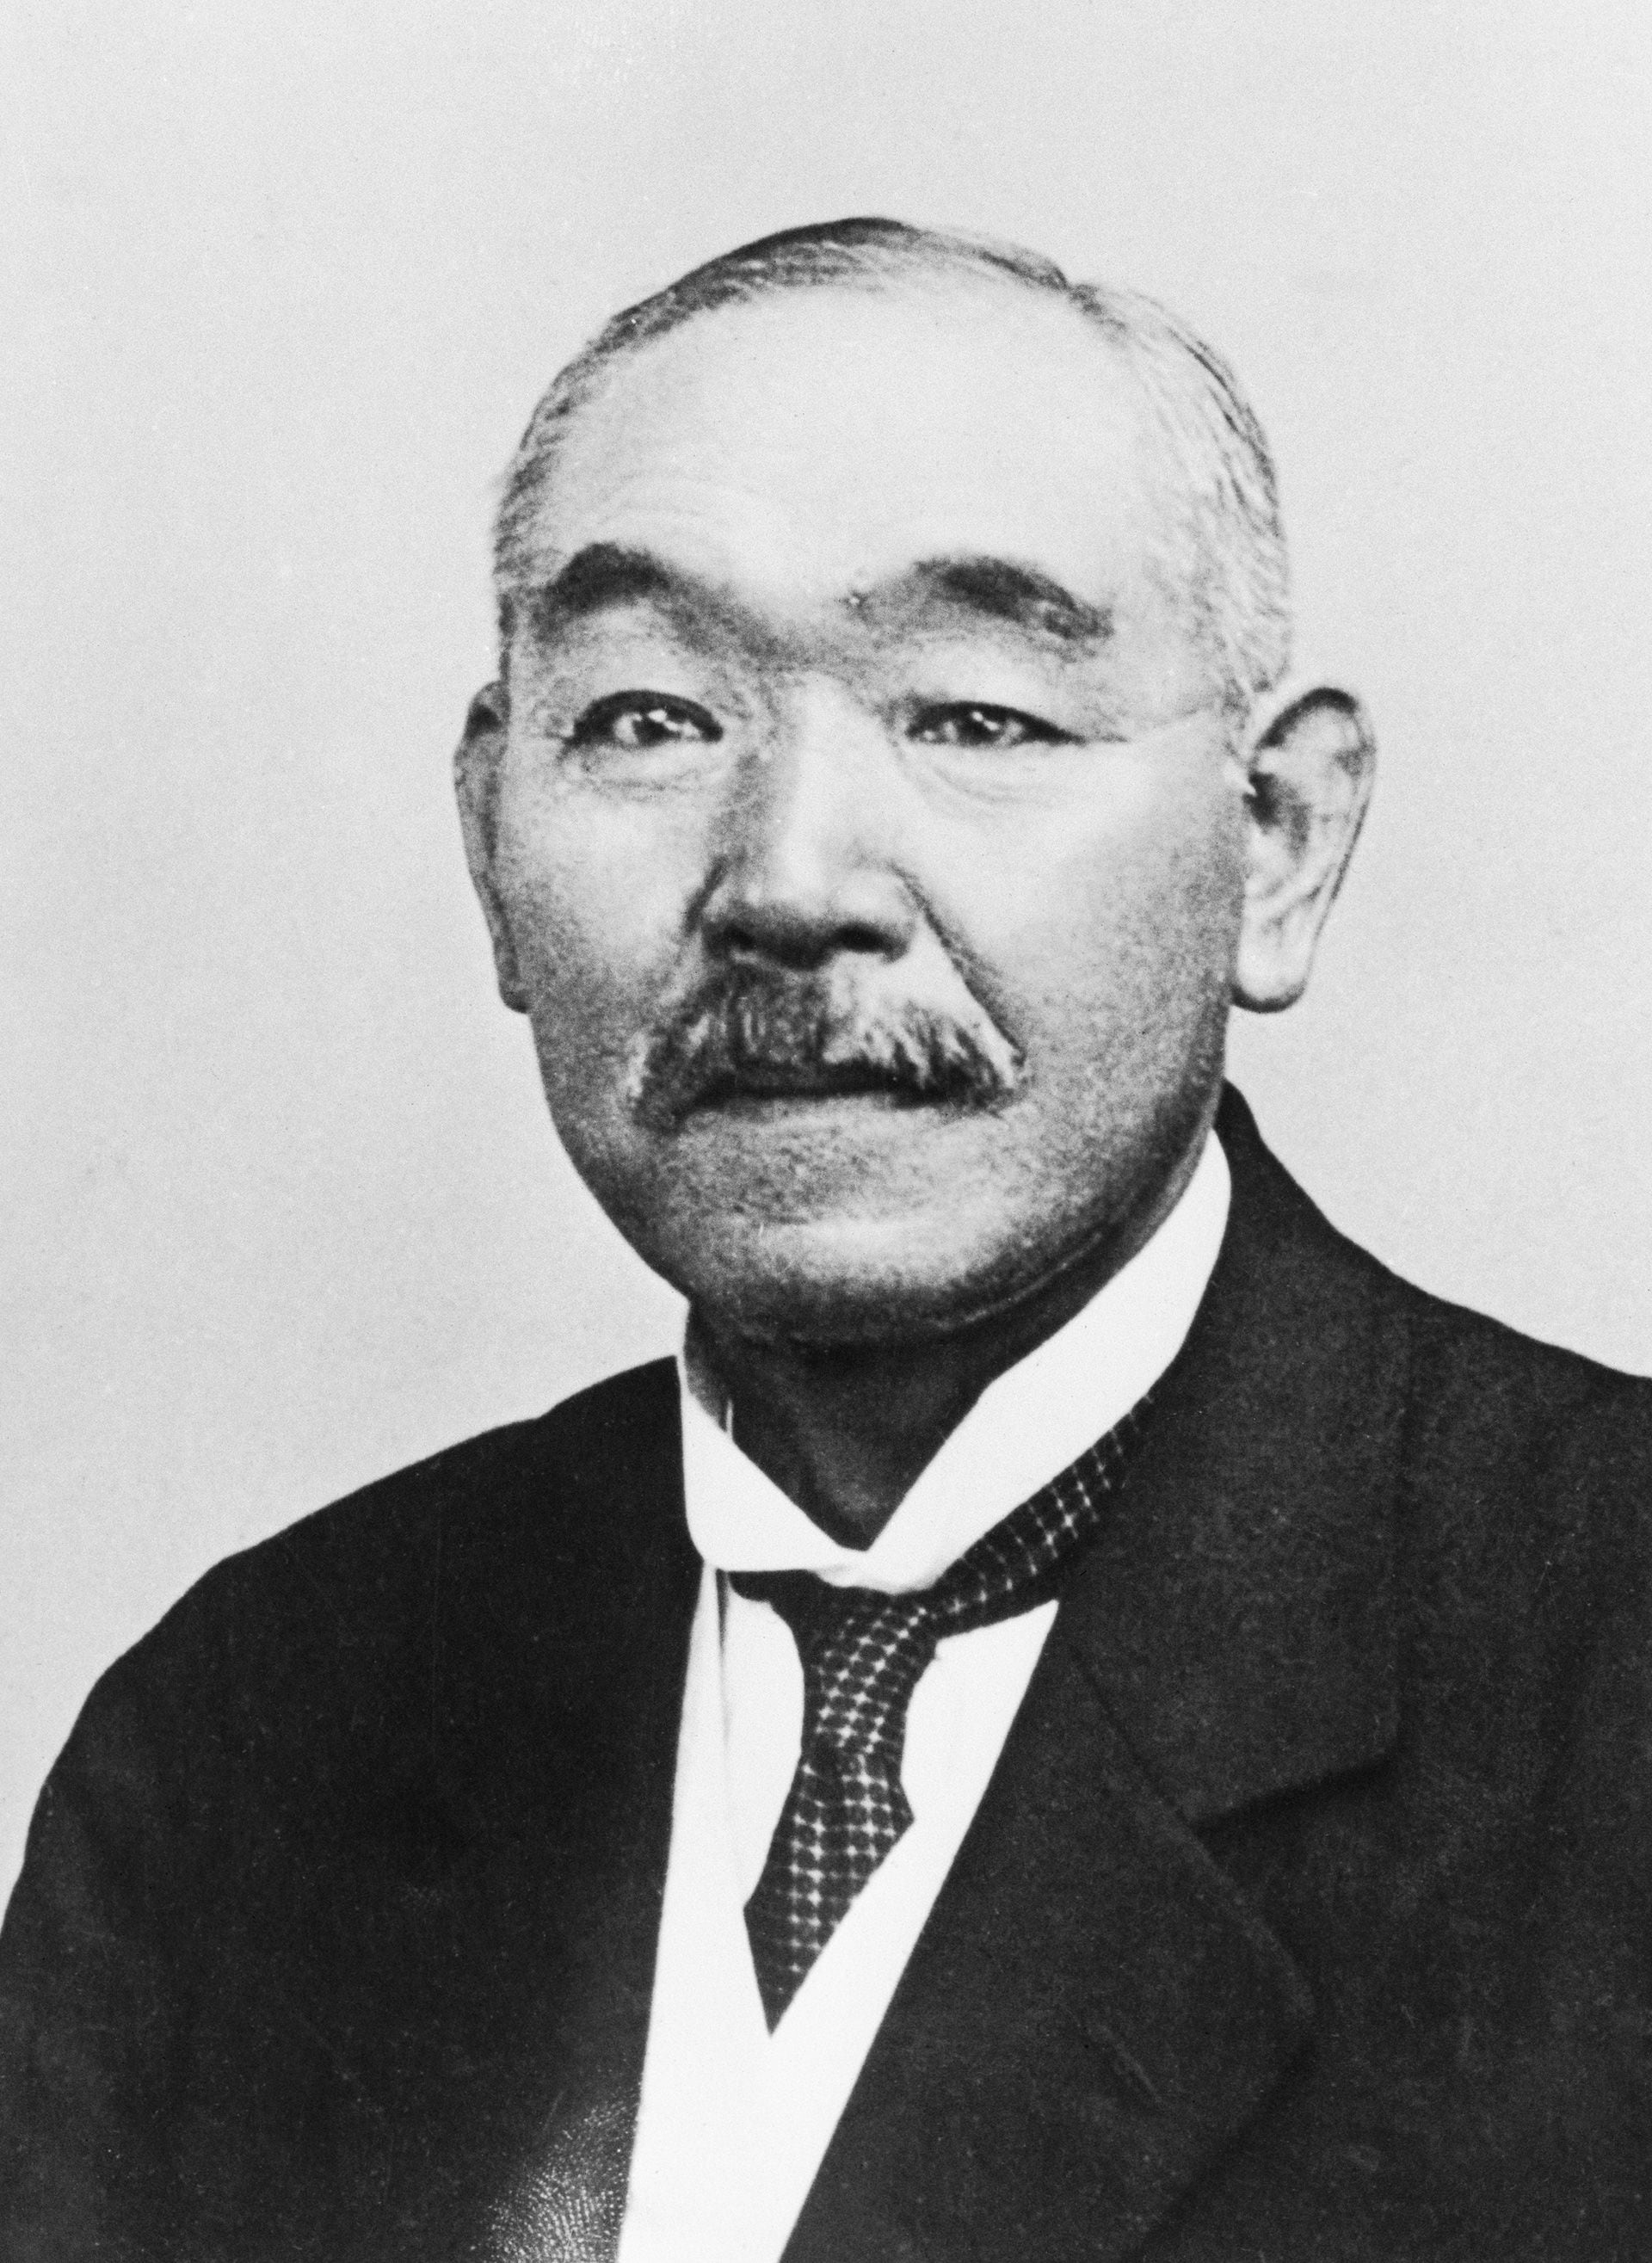 El reemplazante de Tojo fue Kantaro Suzuki. Fue primer ministro de Japón desde abril hasta agosto de 1945 